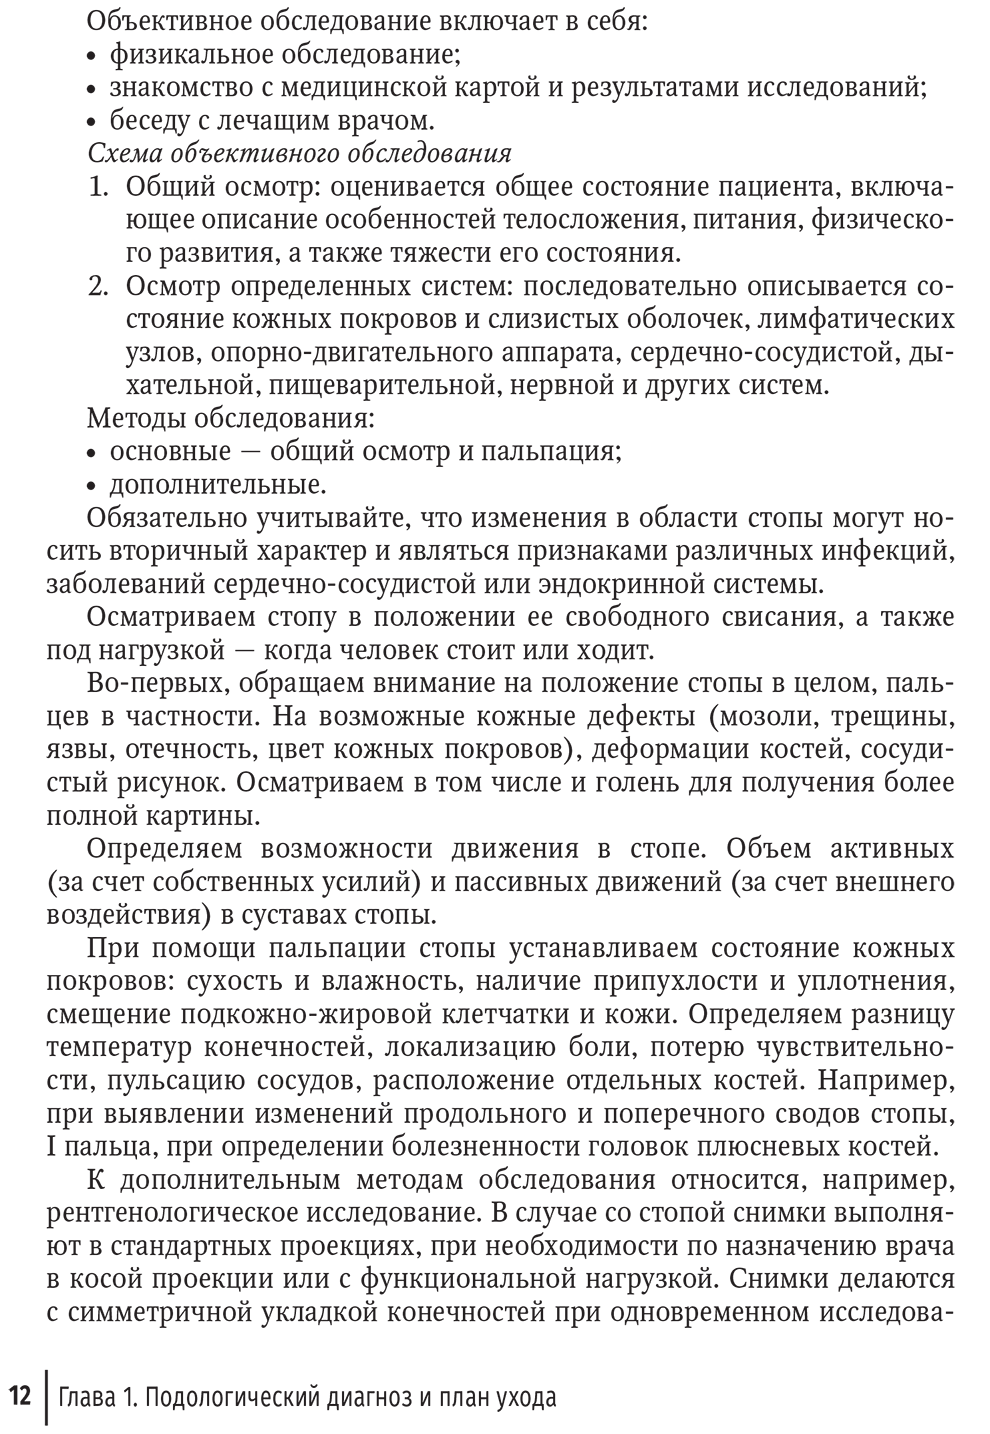 Пример страницы из книги "Подолог+. Руководство" - Дусаева А. Ф.